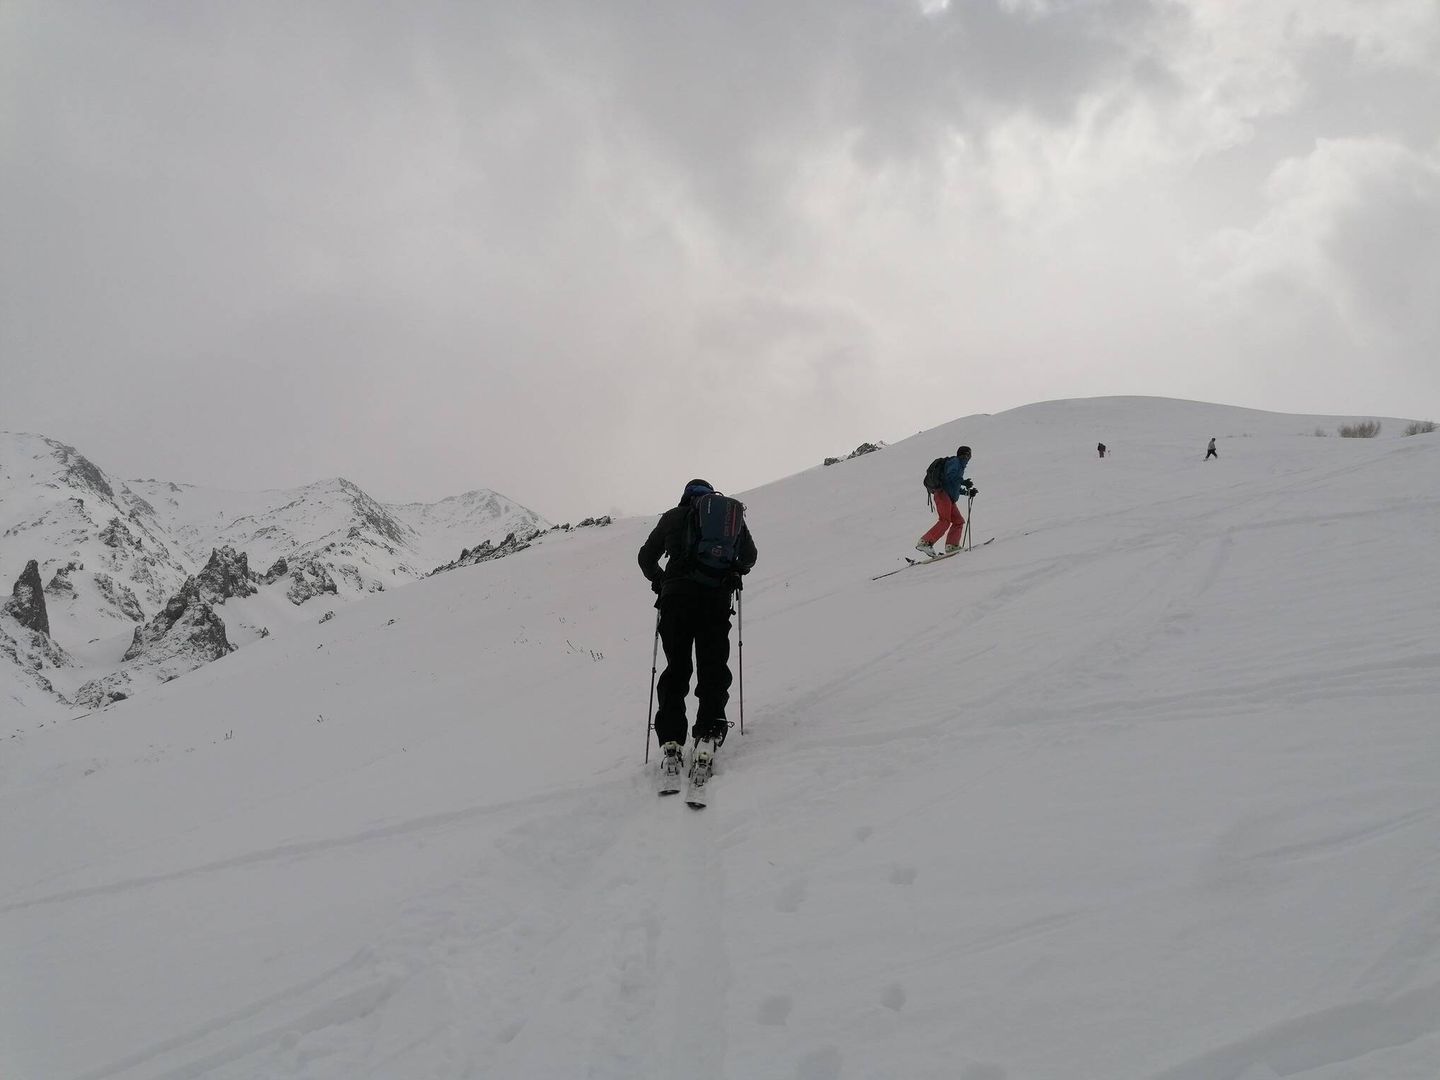 Turistas esquiando en Afganistán. (Untamed borders)